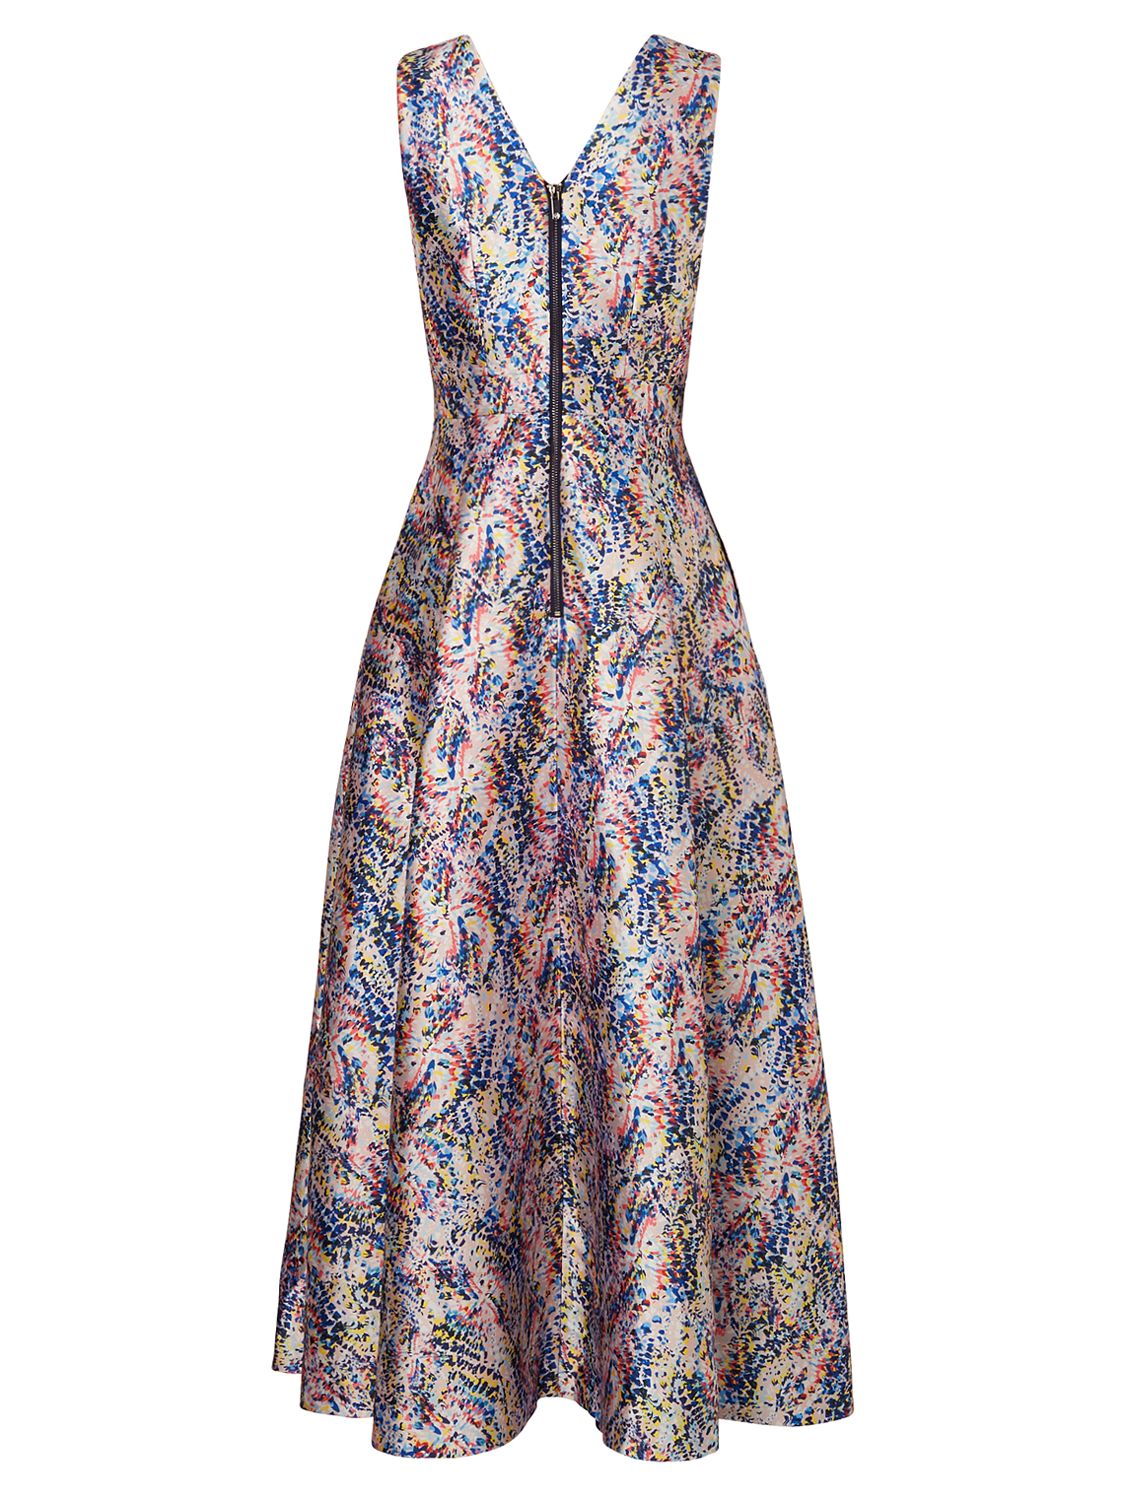 L.K. Bennett Sulan Printed Dress, Multi